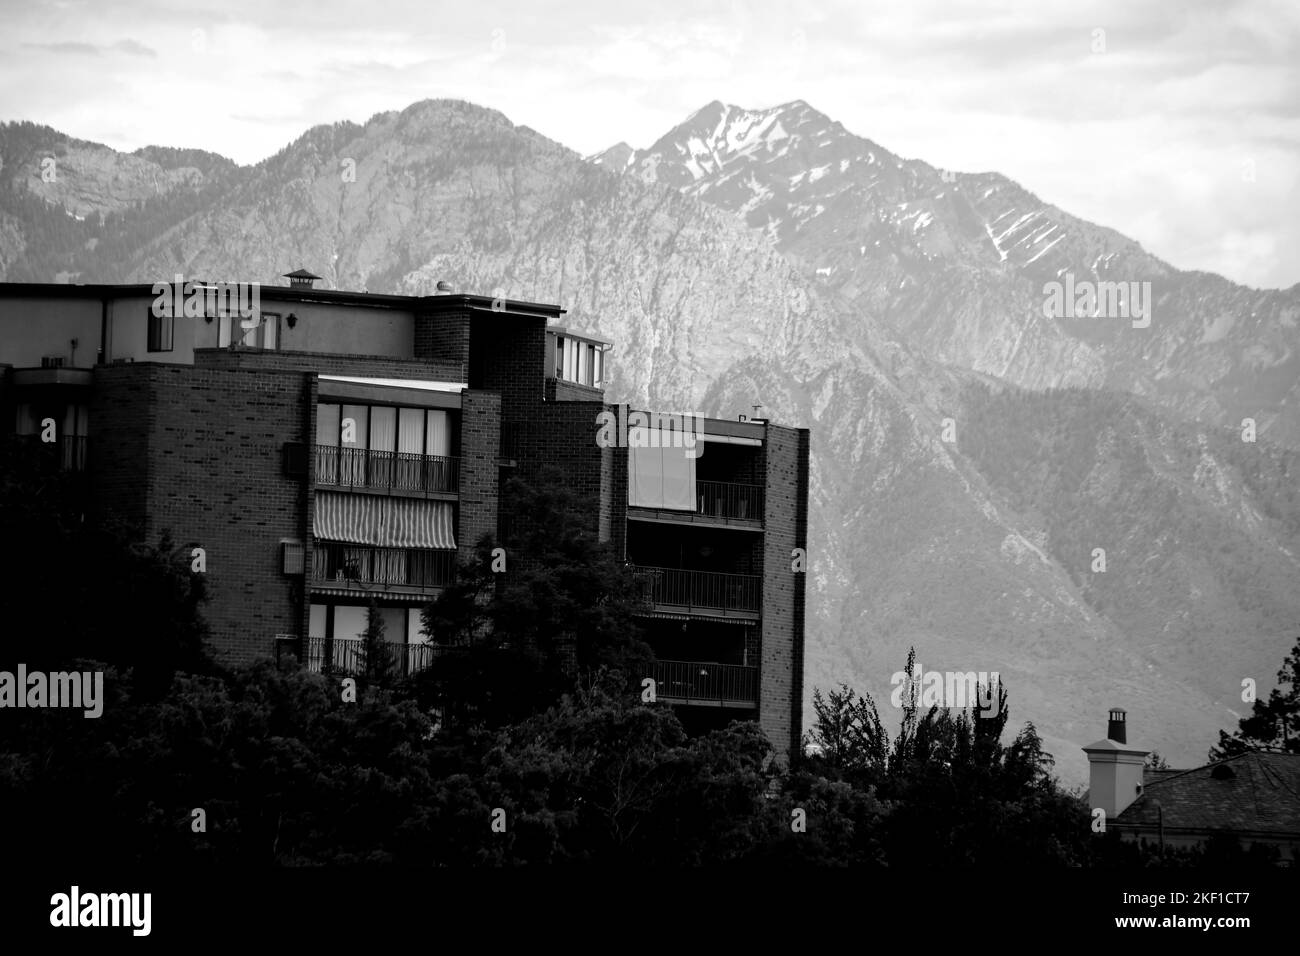 Une photo en échelle de gris d'un bâtiment résidentiel contre des montagnes Banque D'Images